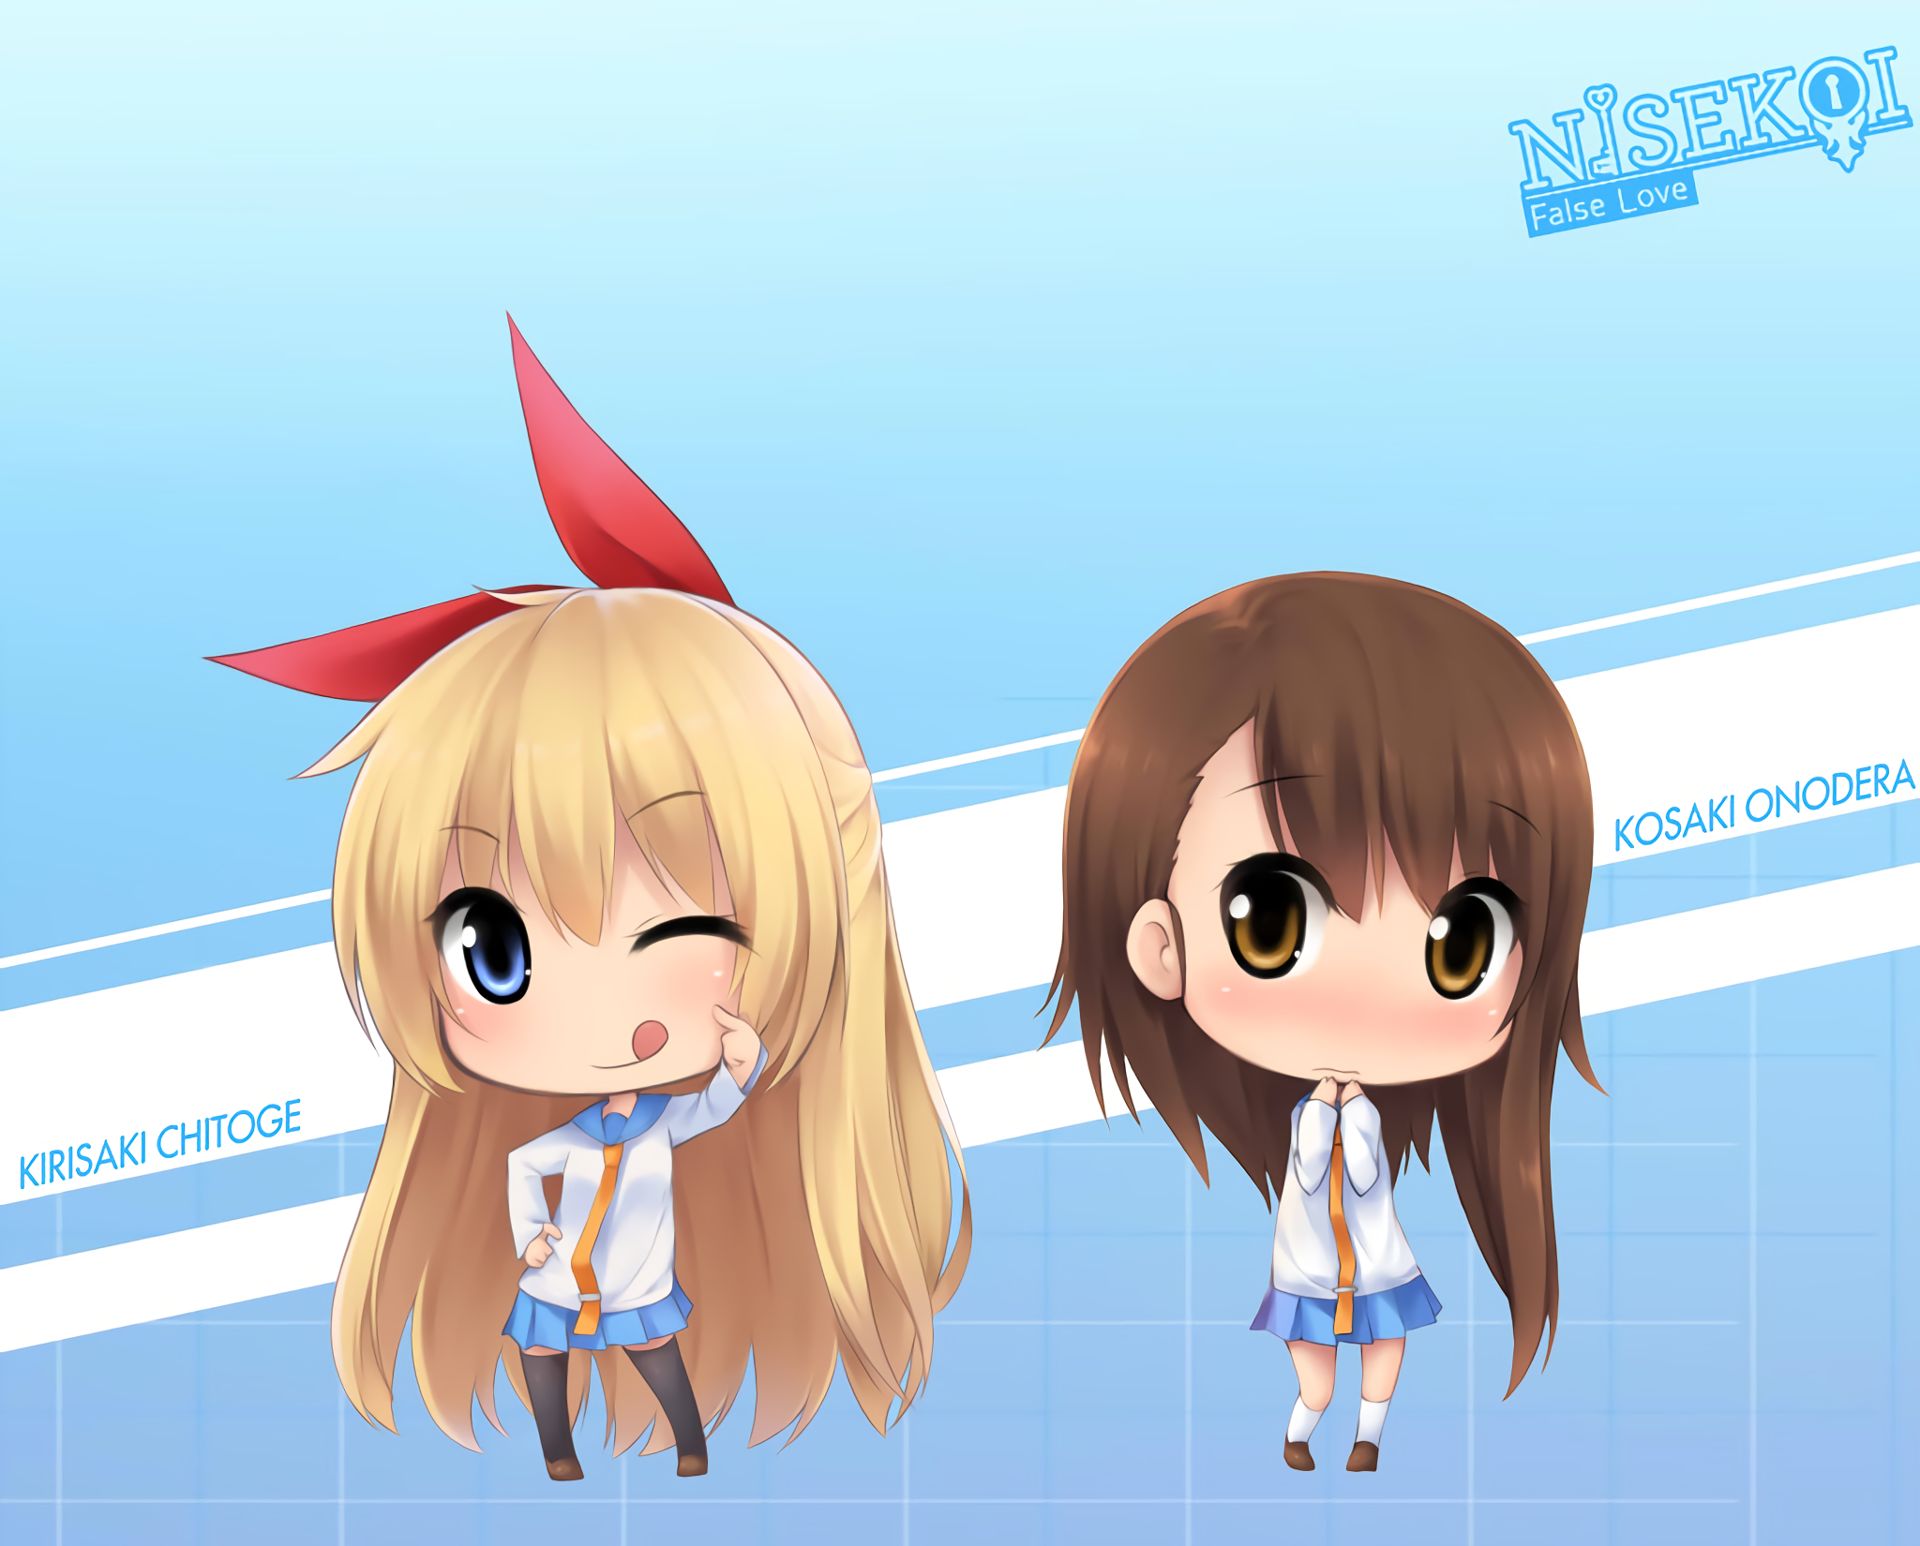 Descarga gratuita de fondo de pantalla para móvil de Animado, Chitoge Kirisaki, Kosaki Onodera, Nisekoi.